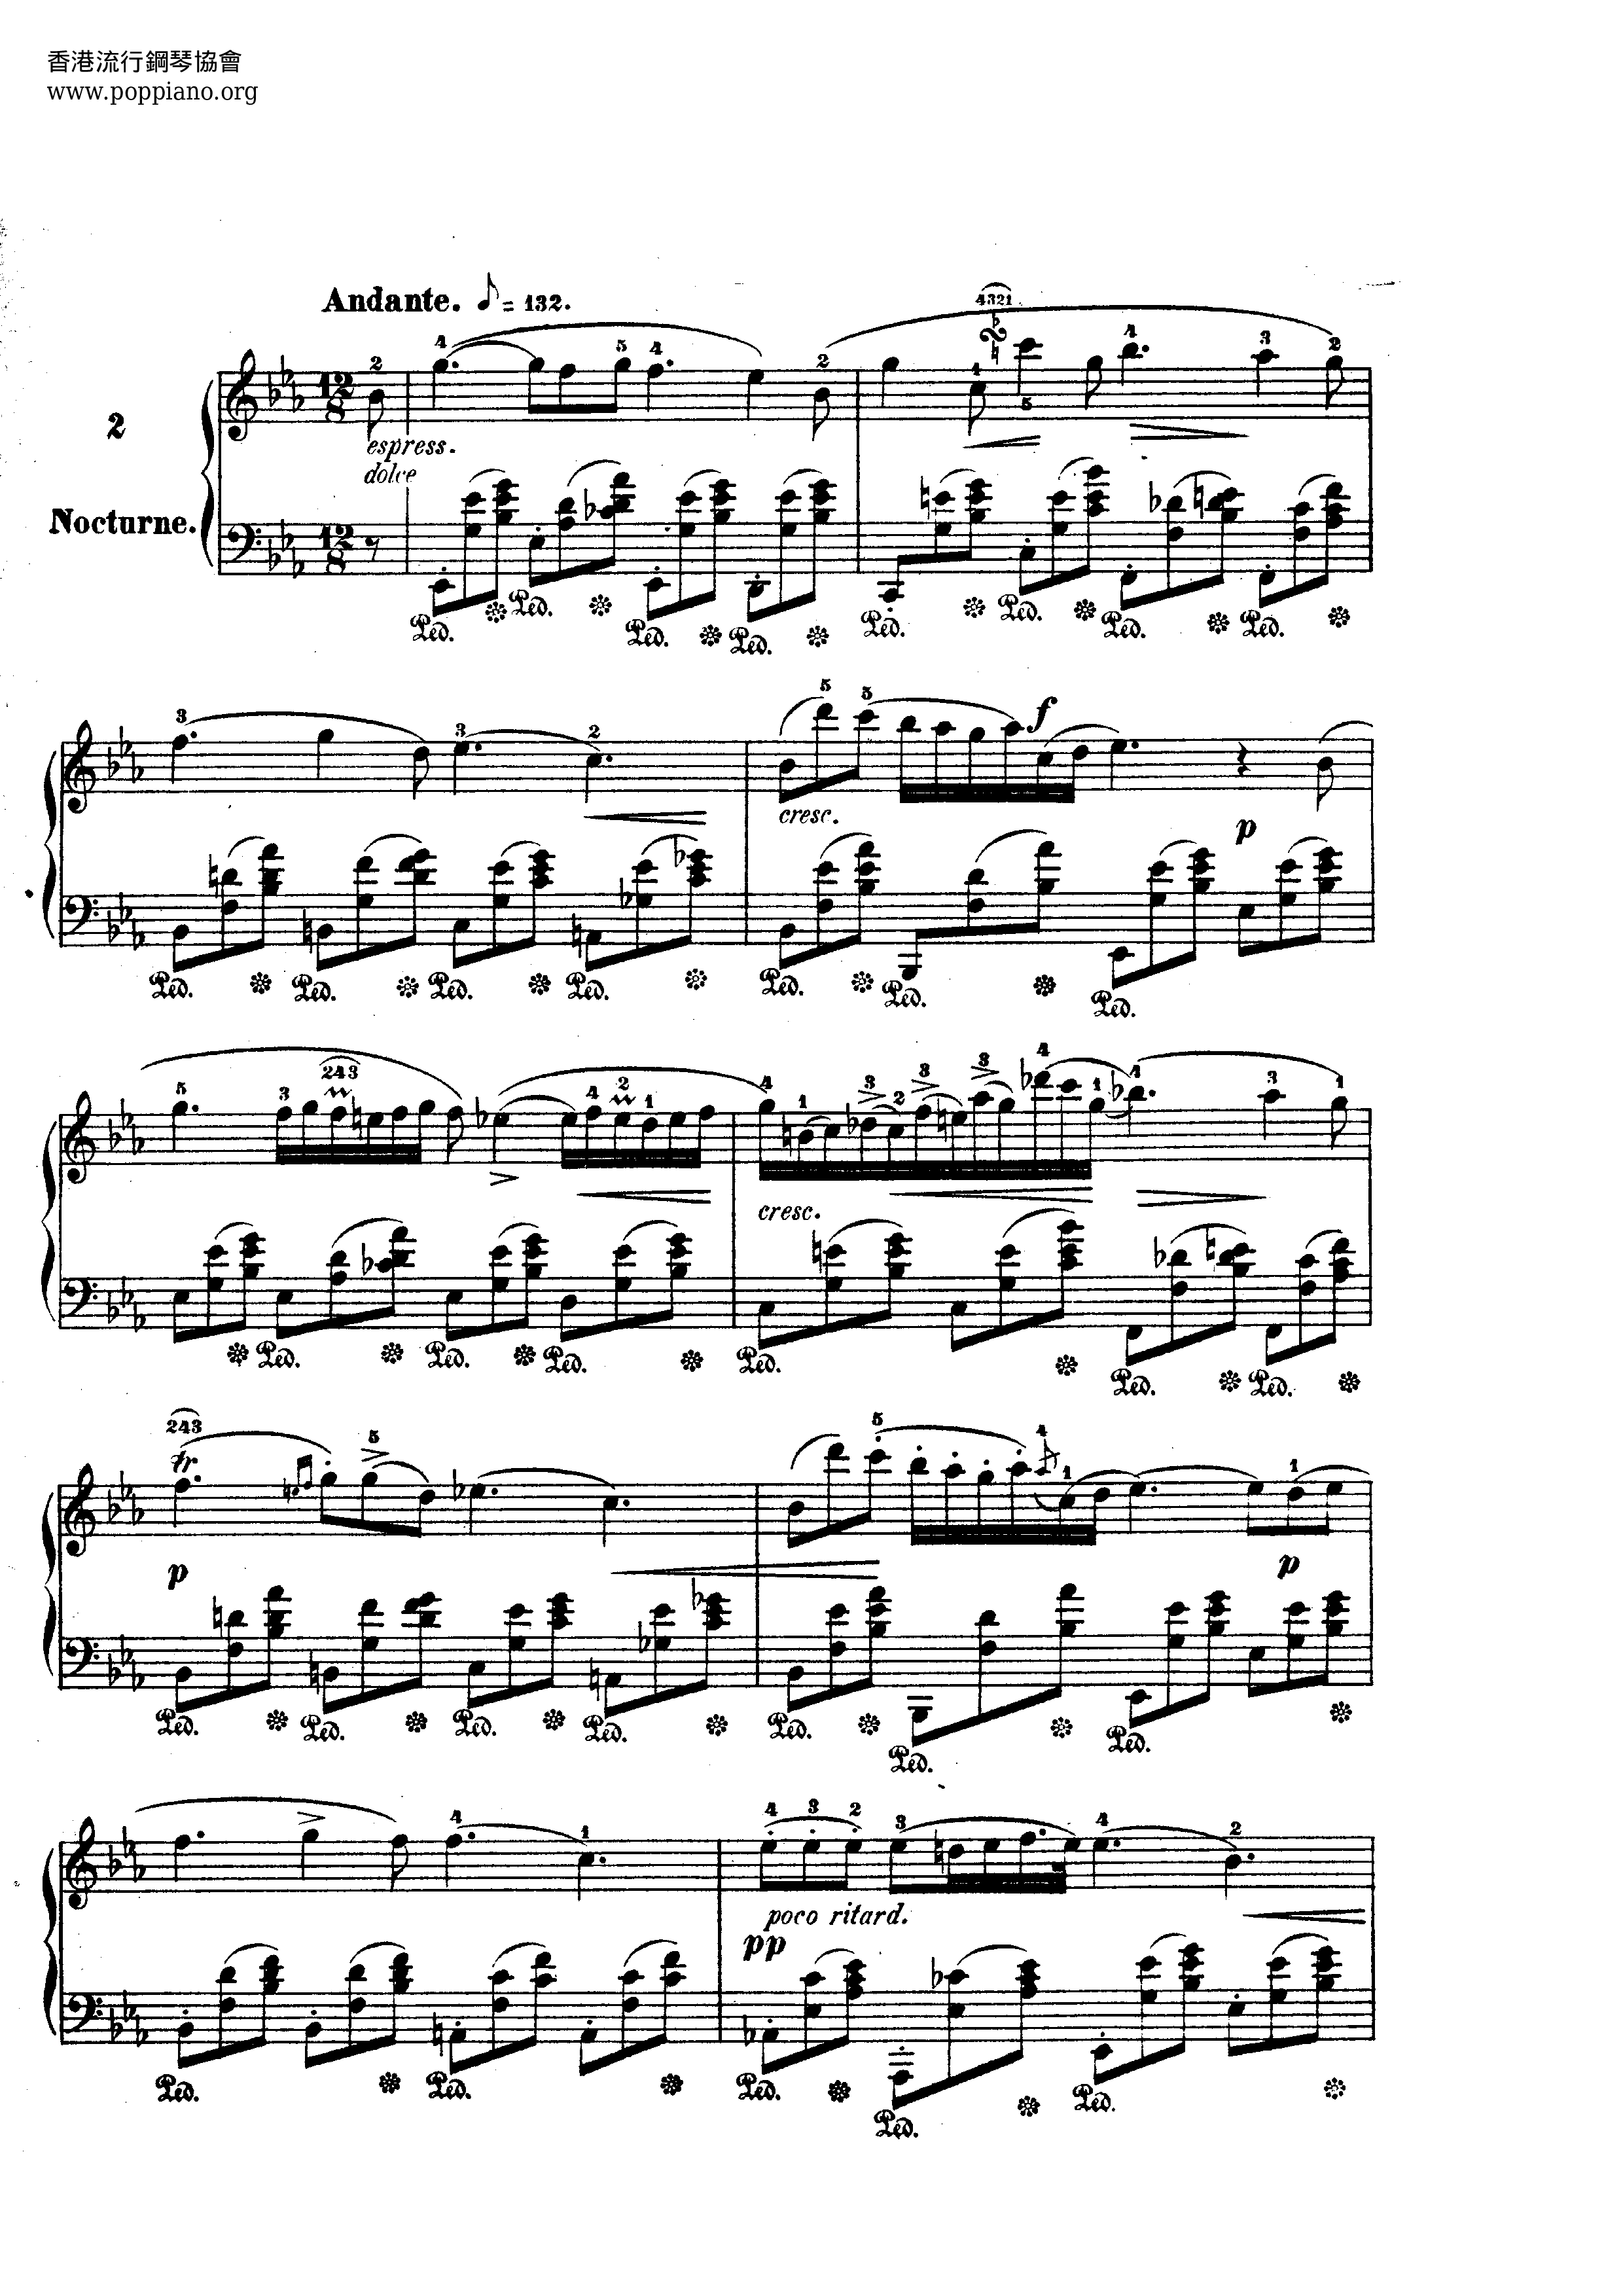 Nocturne No. 02 Score